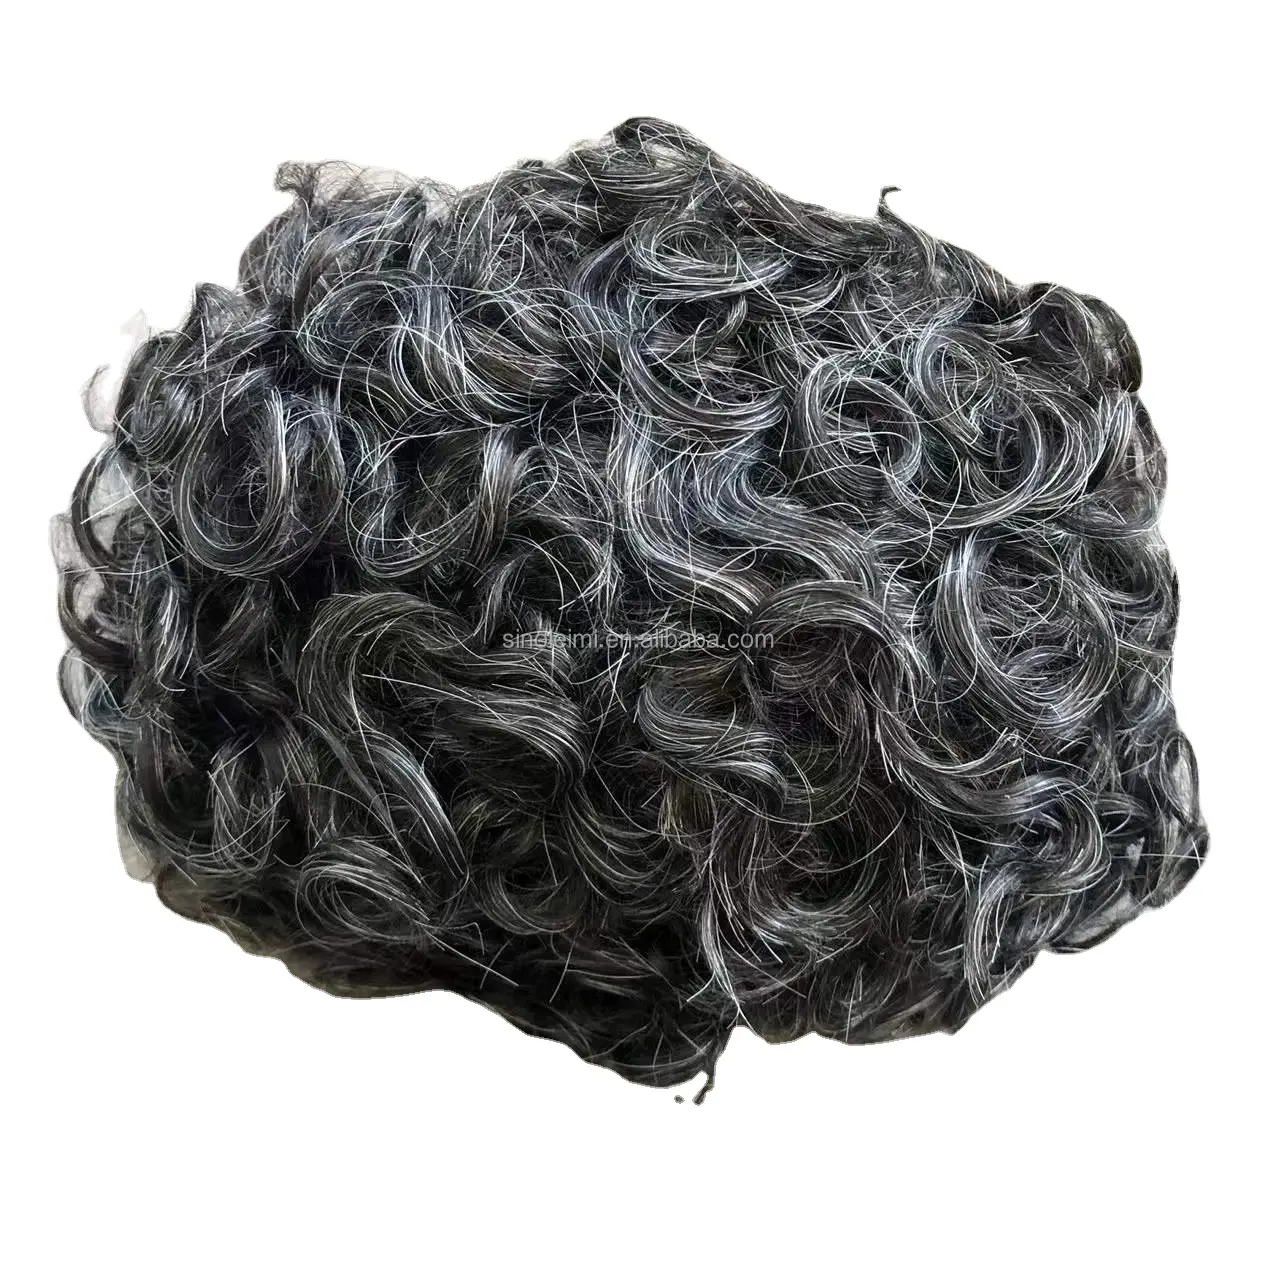 Toupet de couleur grise pour hommes 80% # 1b mélange de cheveux humains noirs 20% argent, peau douce et fine, pièces de cheveux pour hommes